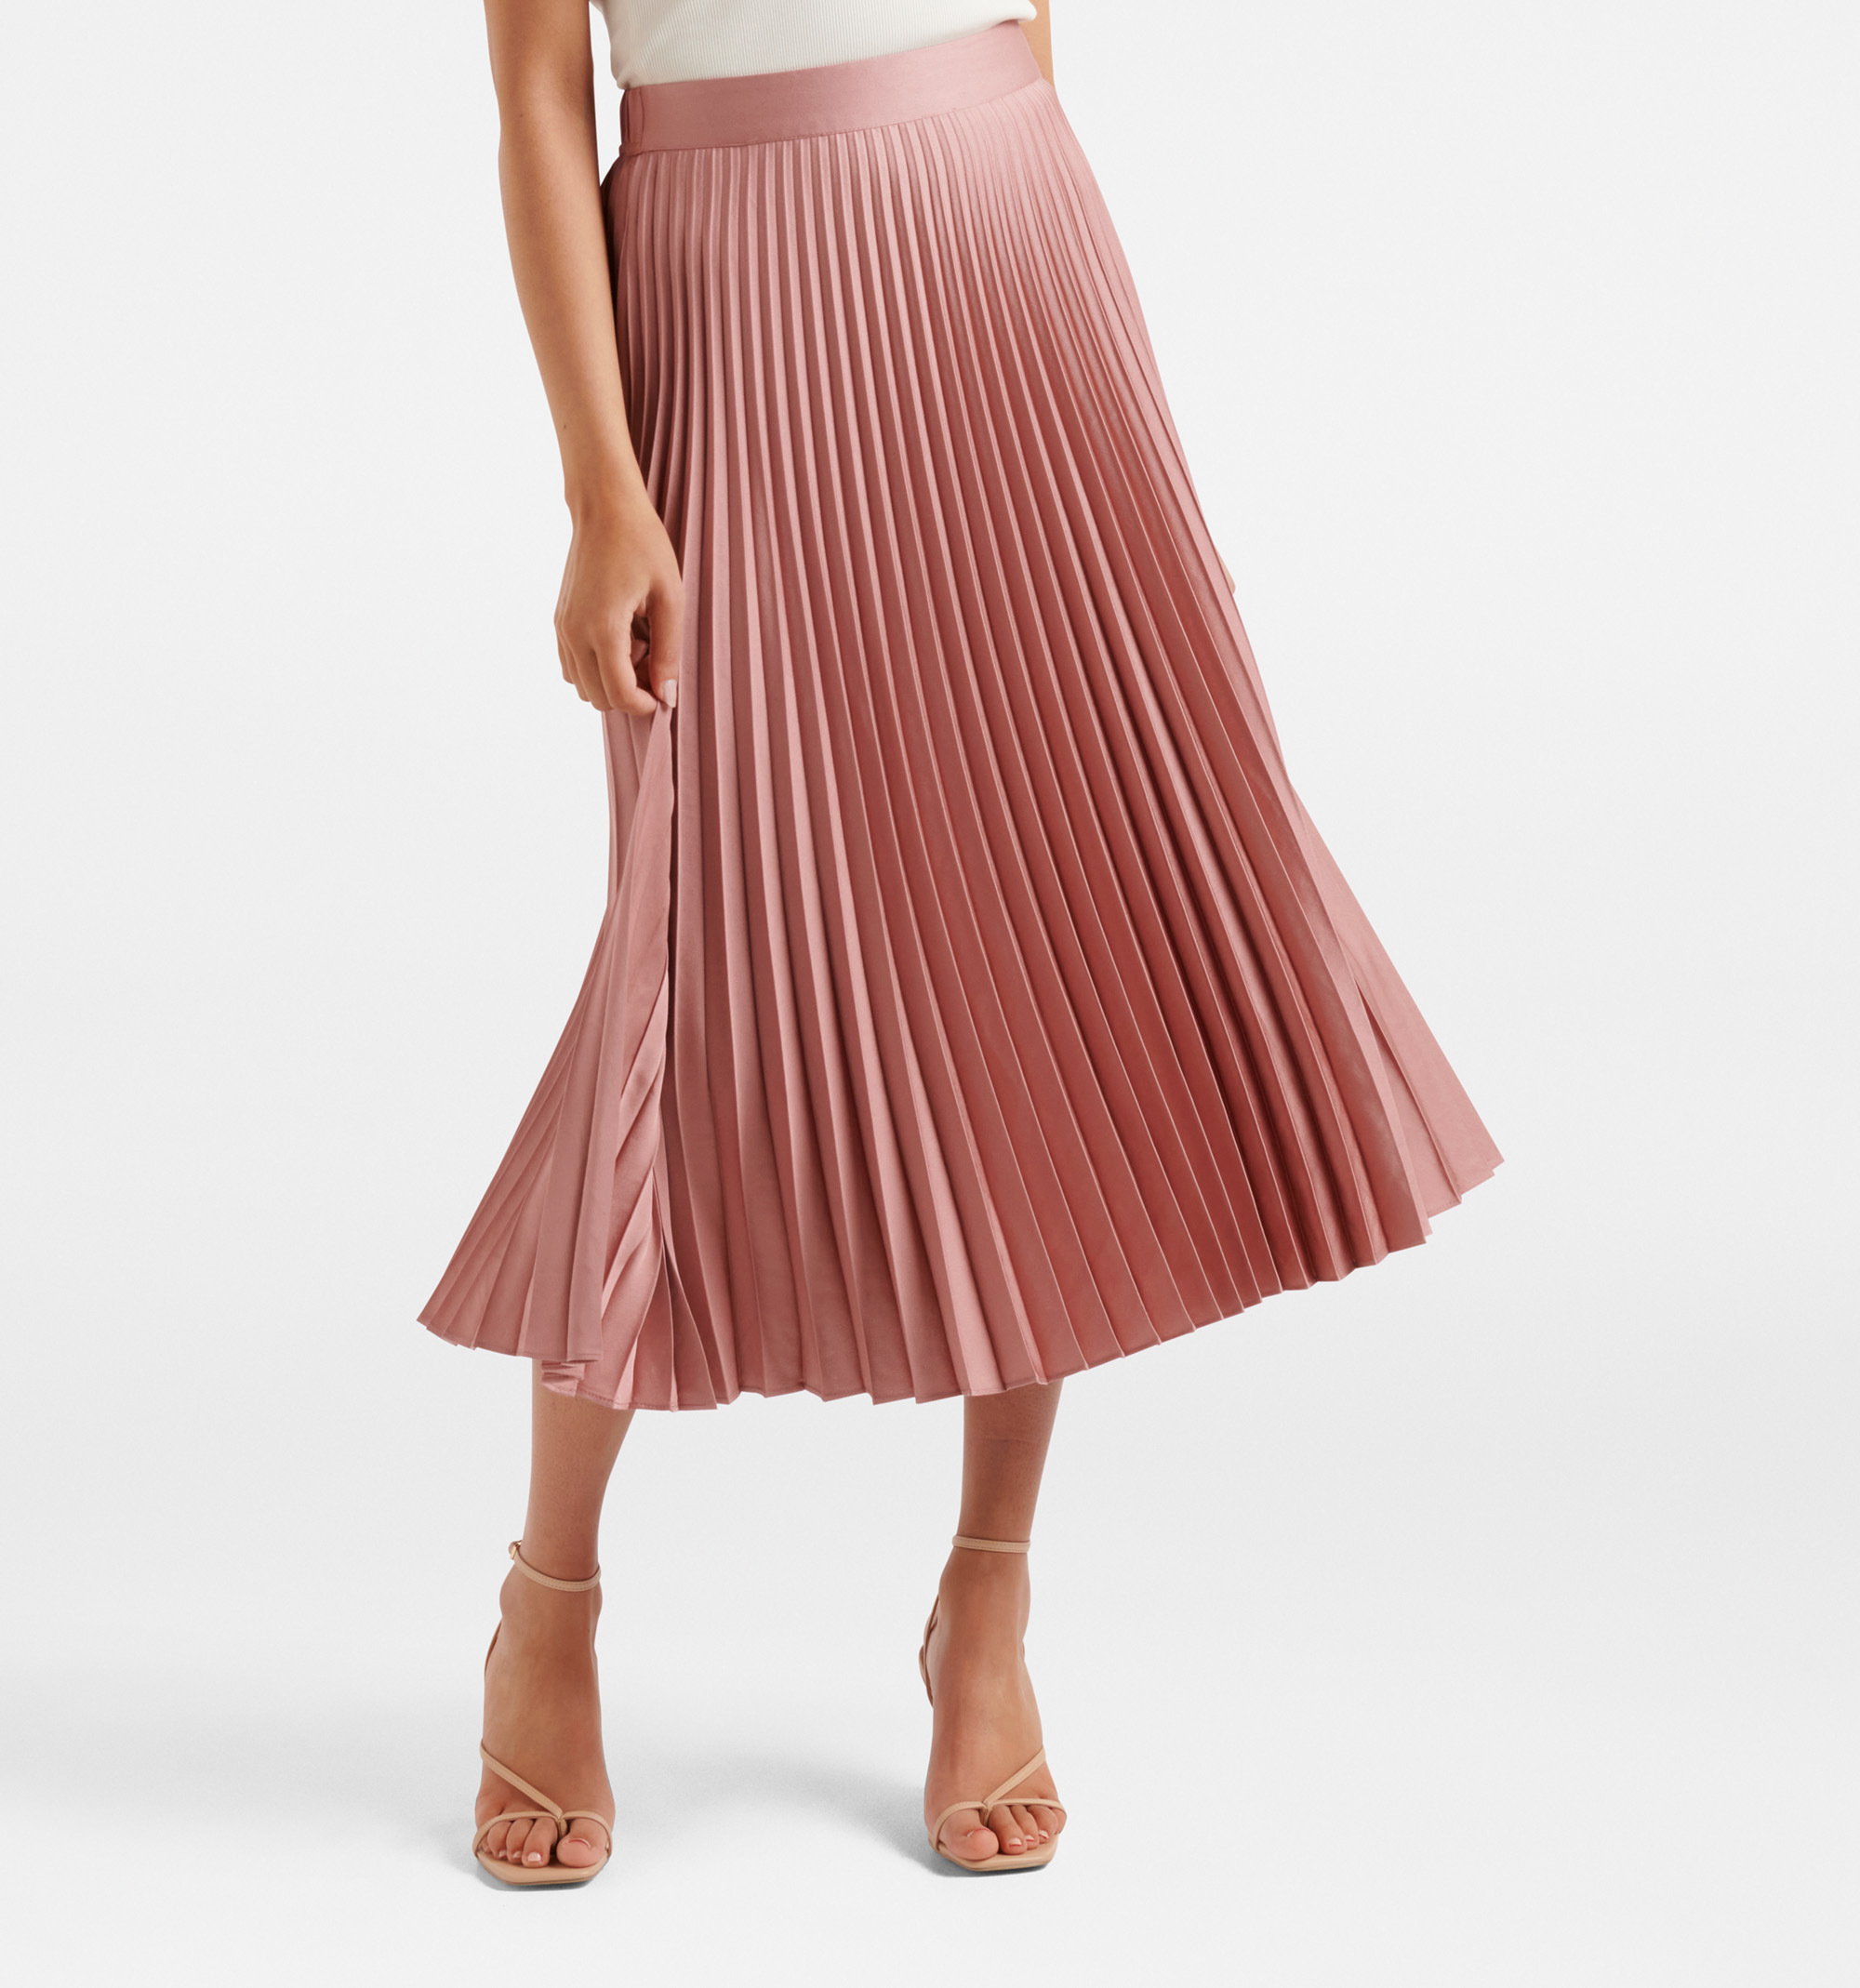 Forever 21 Black Cream Striped Pleated A Line Short Mini Skirt Size 29 |  eBay